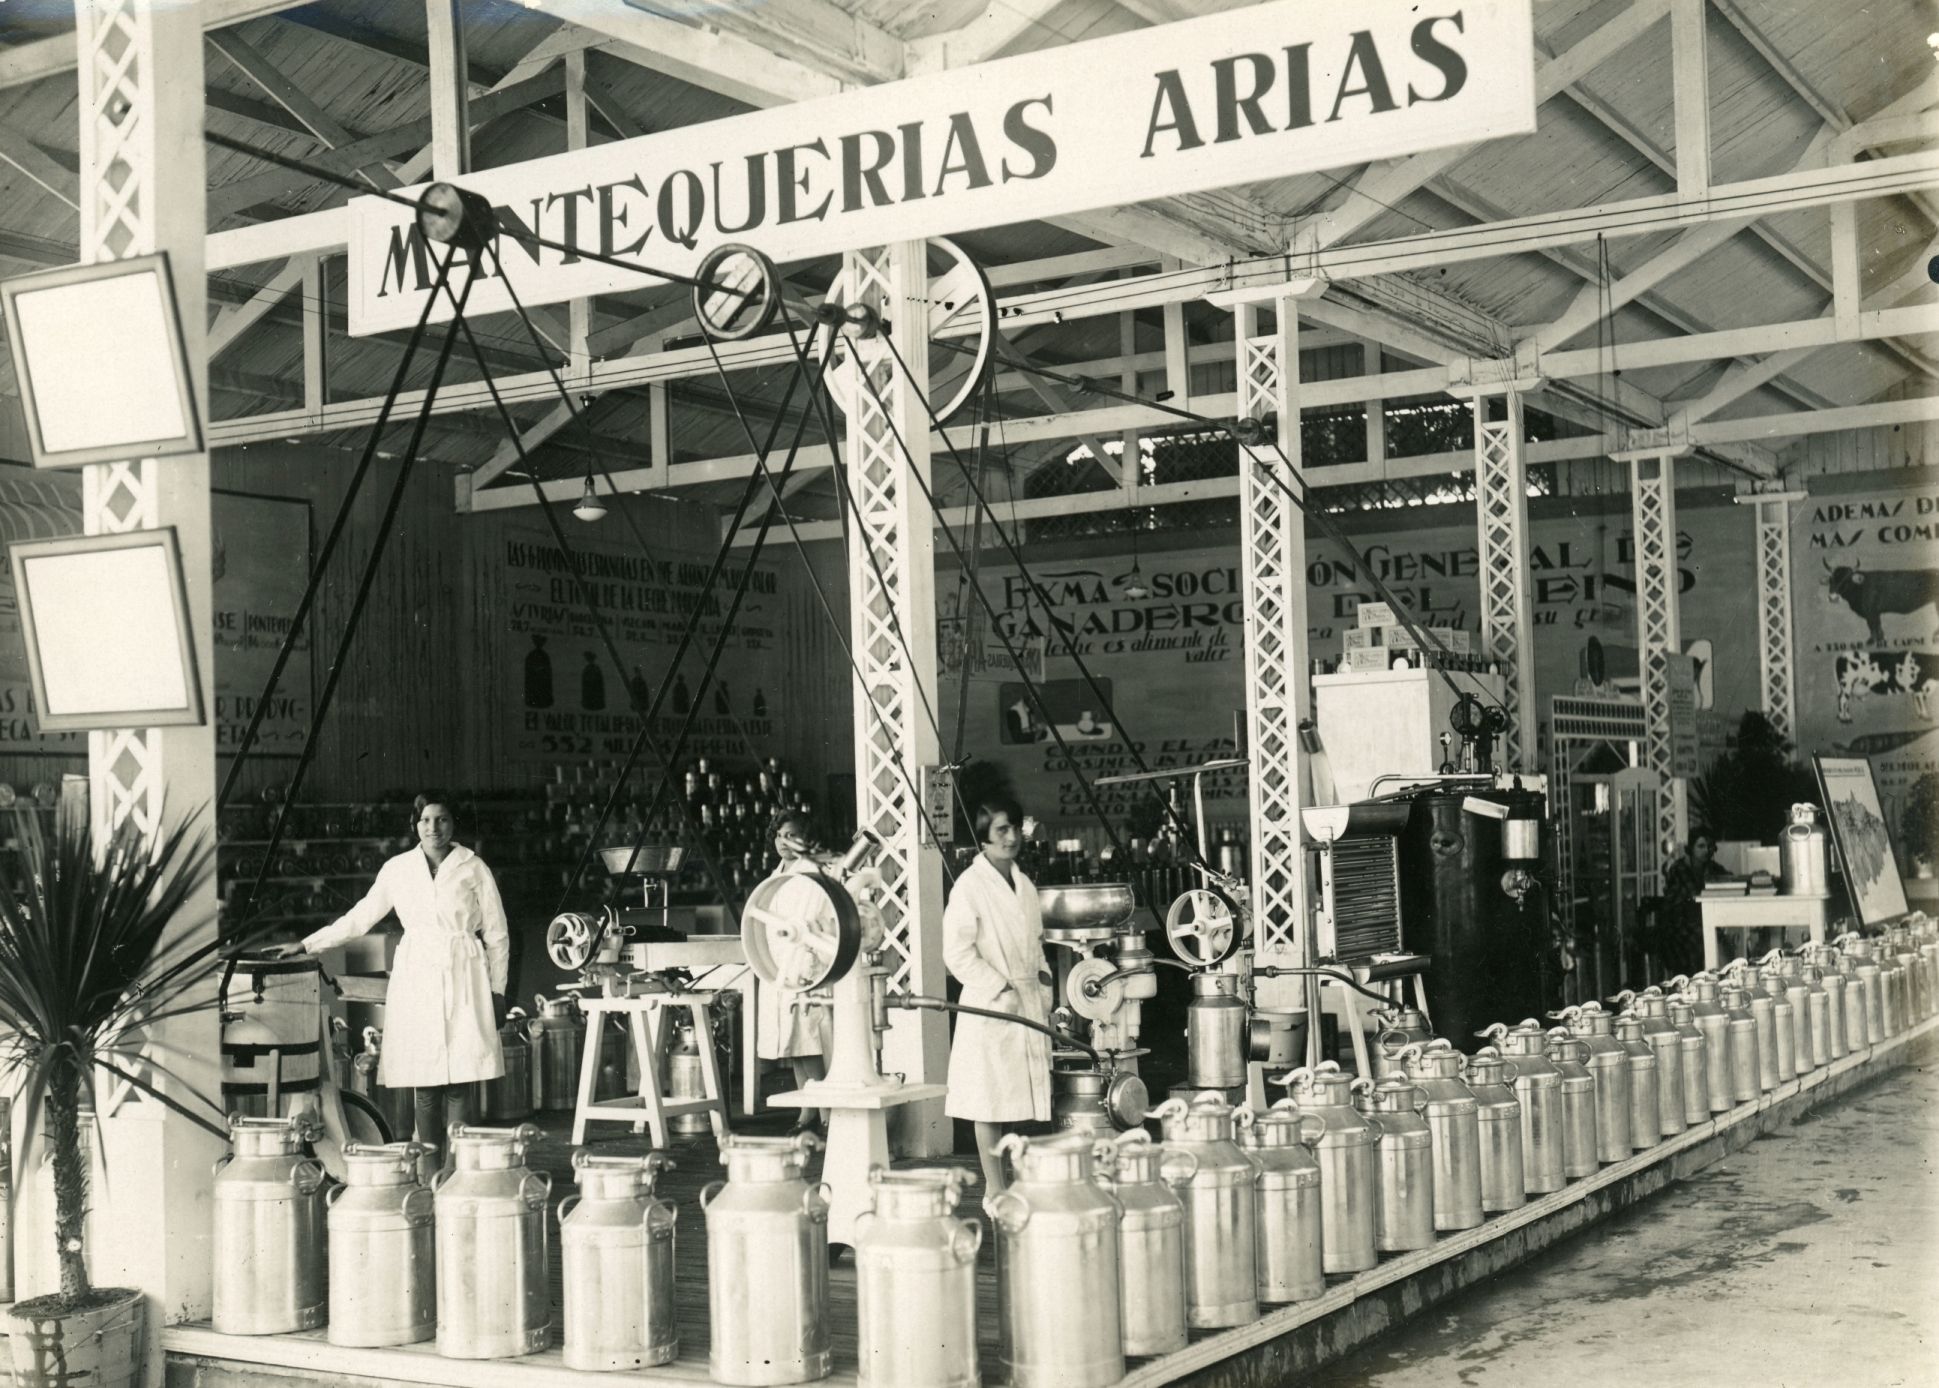 FEBRERO. Puesto de Mantequerías Arias en la Feria de Muestres, 1929.